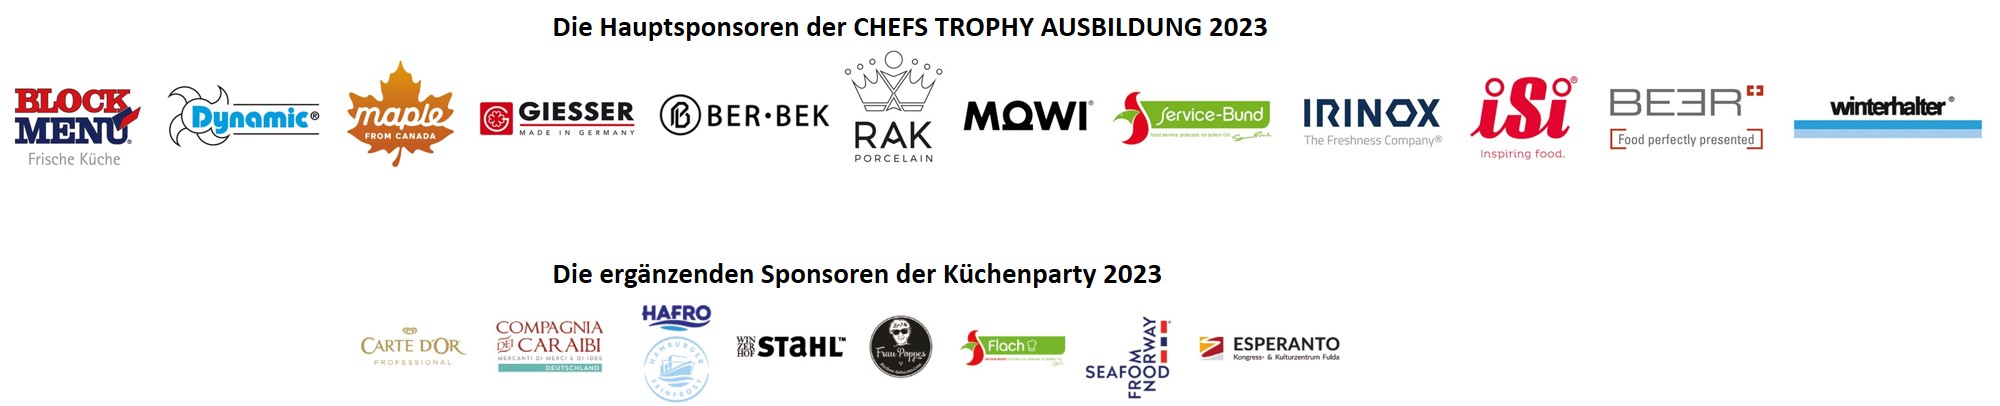 Sponsoren_CHEFS TROPHY Ausbildung 2023